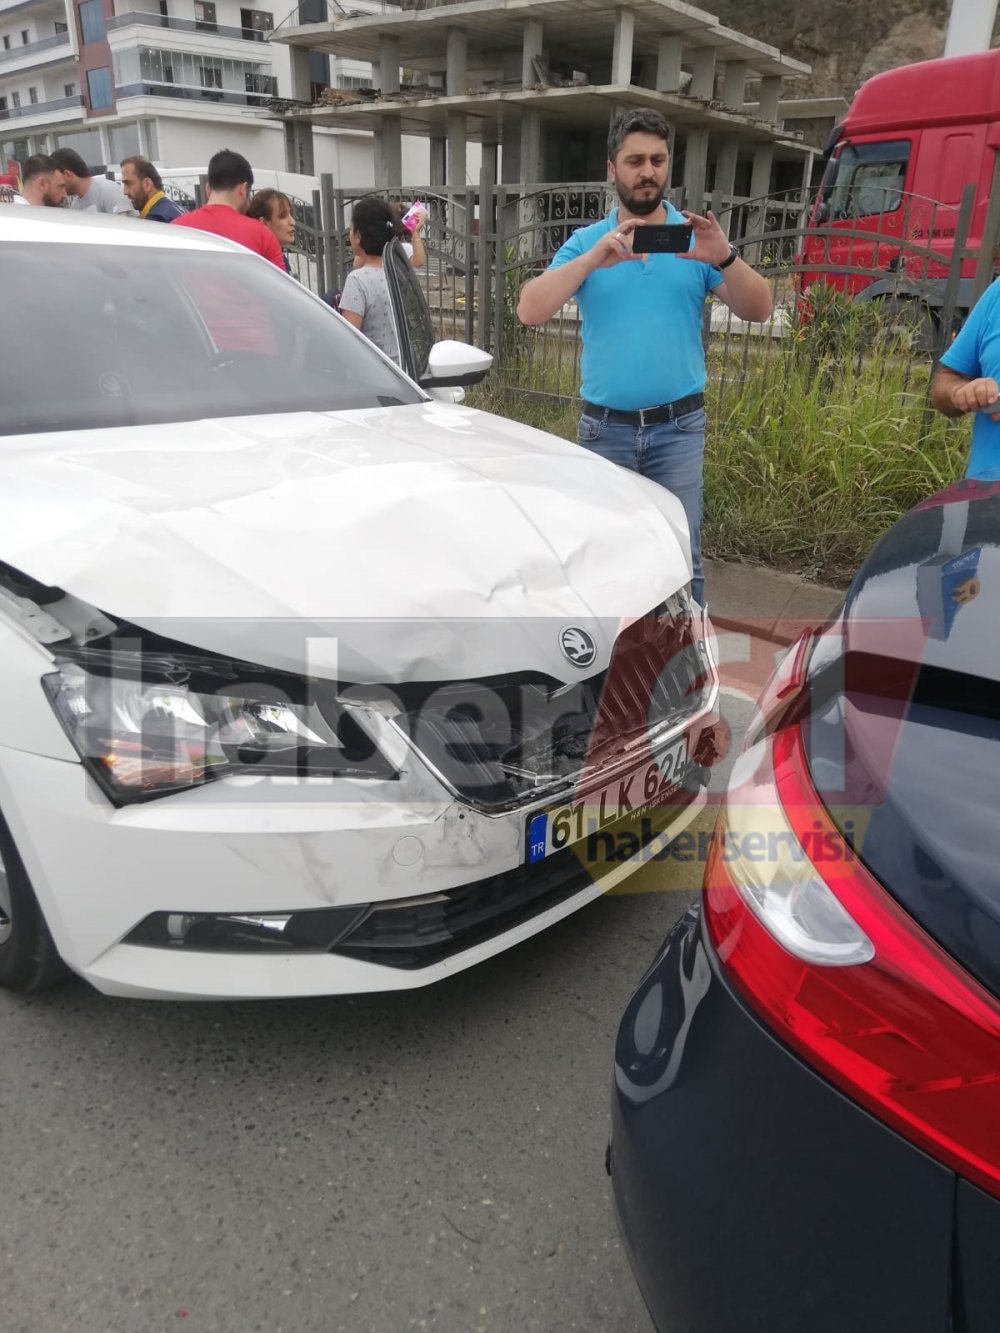 Trabzon’da zincirleme kaza – 4 araç birbirine girdi